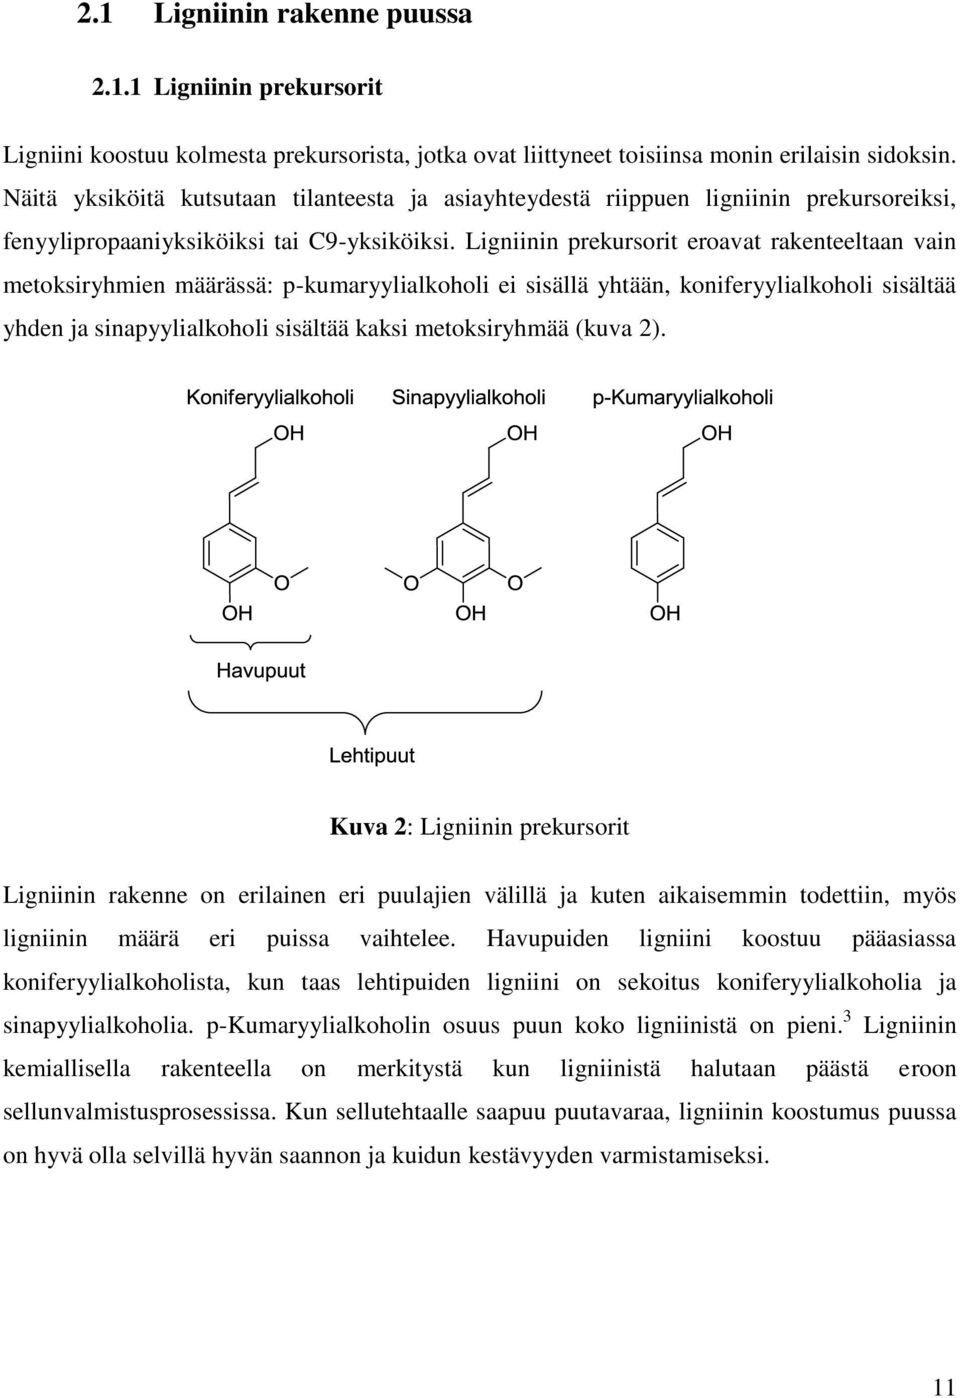 Ligniinin prekursorit eroavat rakenteeltaan vain metoksiryhmien määrässä: p-kumaryylialkoholi ei sisällä yhtään, koniferyylialkoholi sisältää yhden ja sinapyylialkoholi sisältää kaksi metoksiryhmää